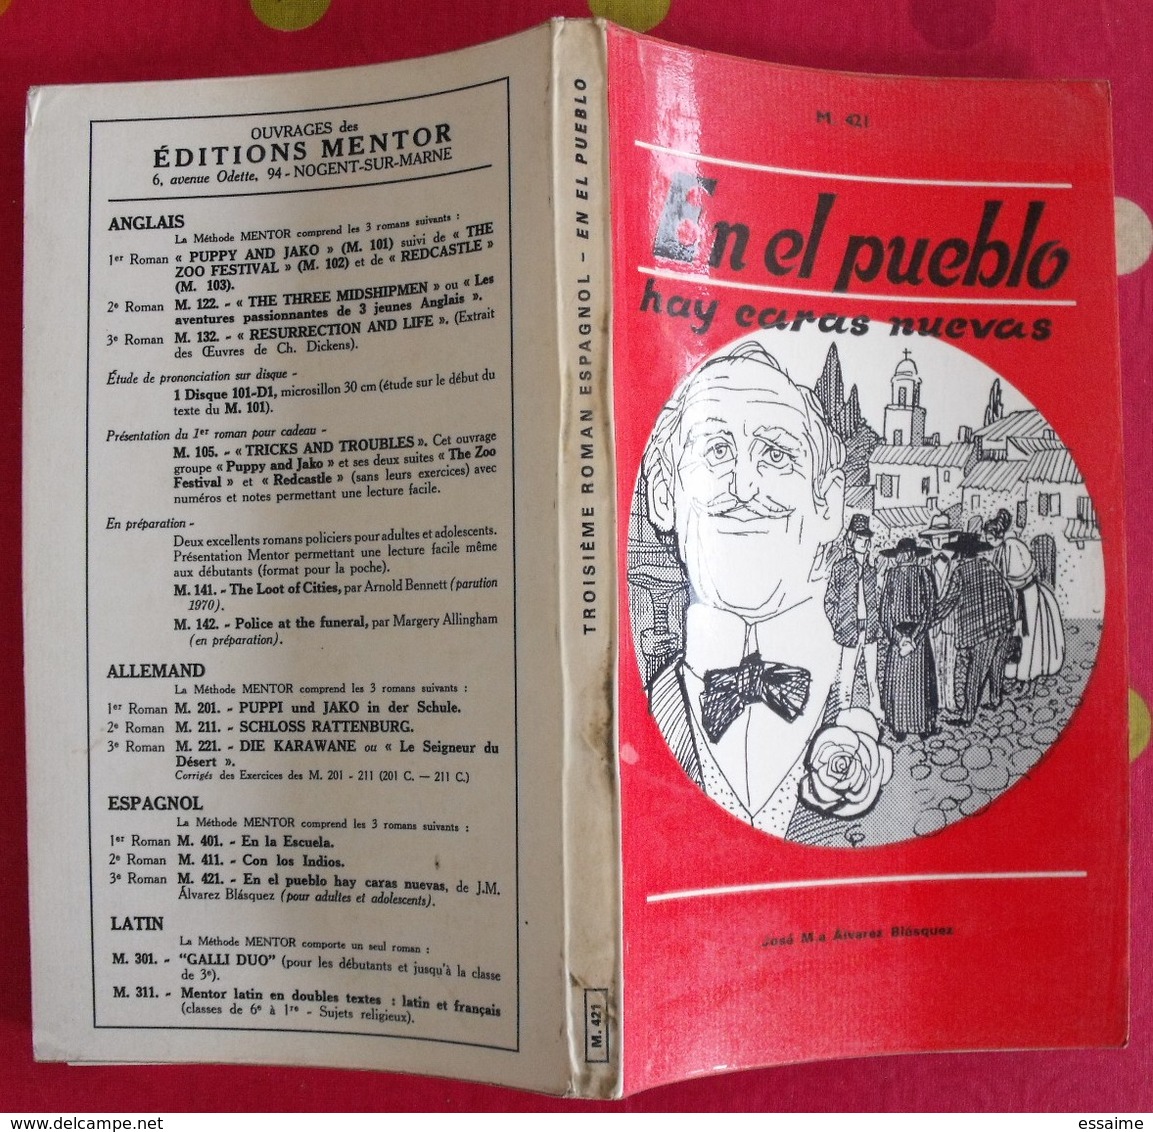 lot de 12 livres scolaires ou pédagogiques en Espagnol. espana. espagne. entre 1909 et 1969